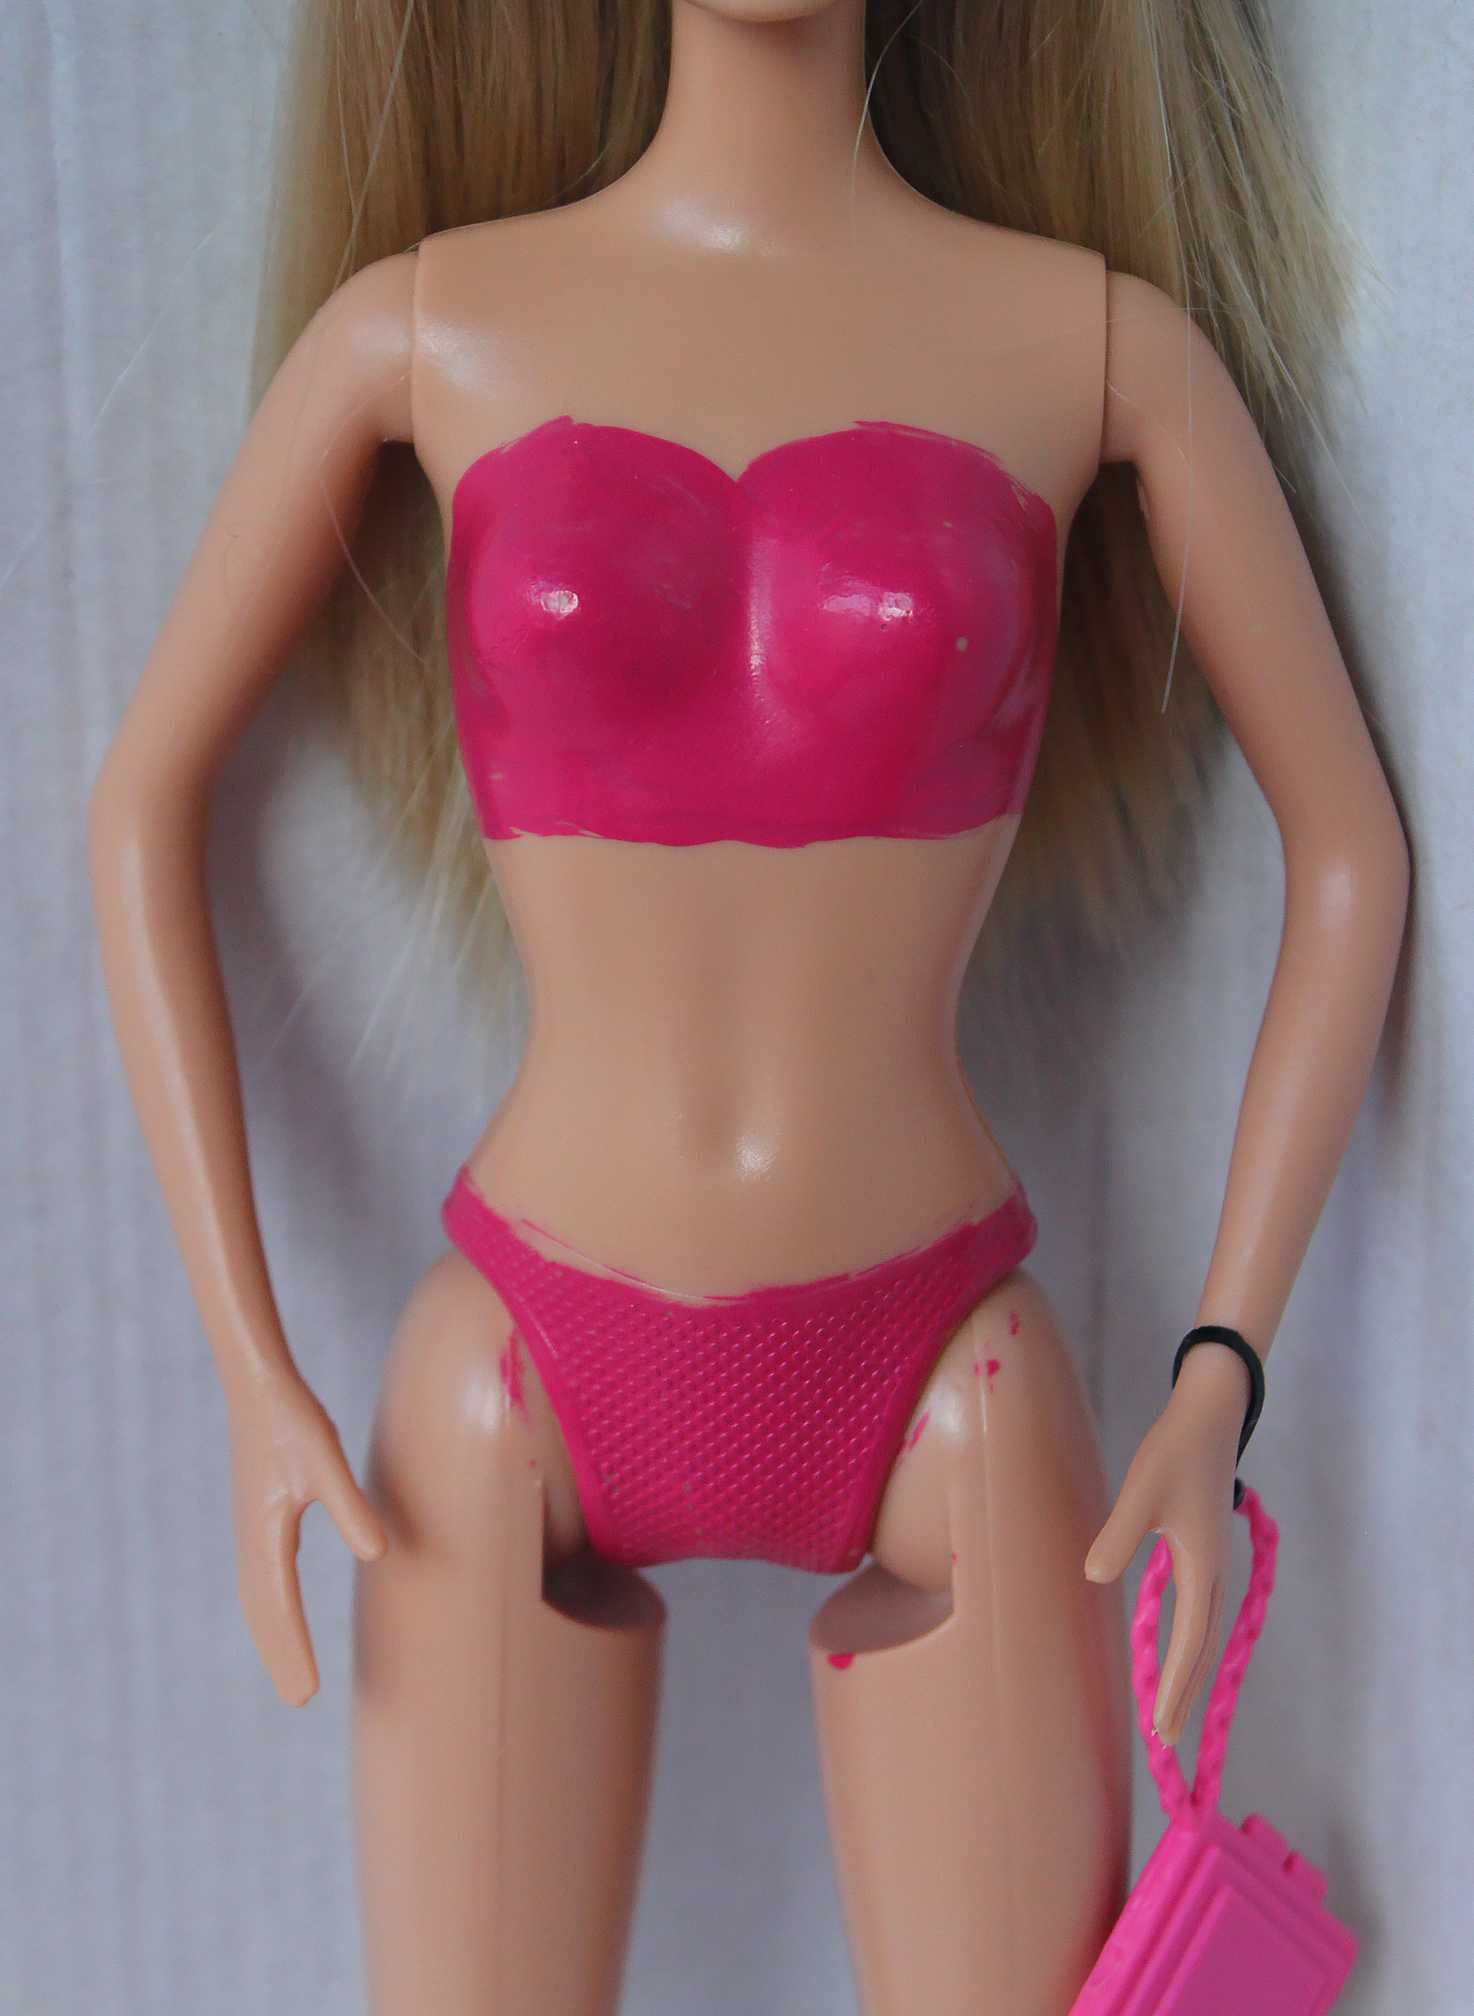 Кукла Барби с шарнирными коленями оригинал mattel